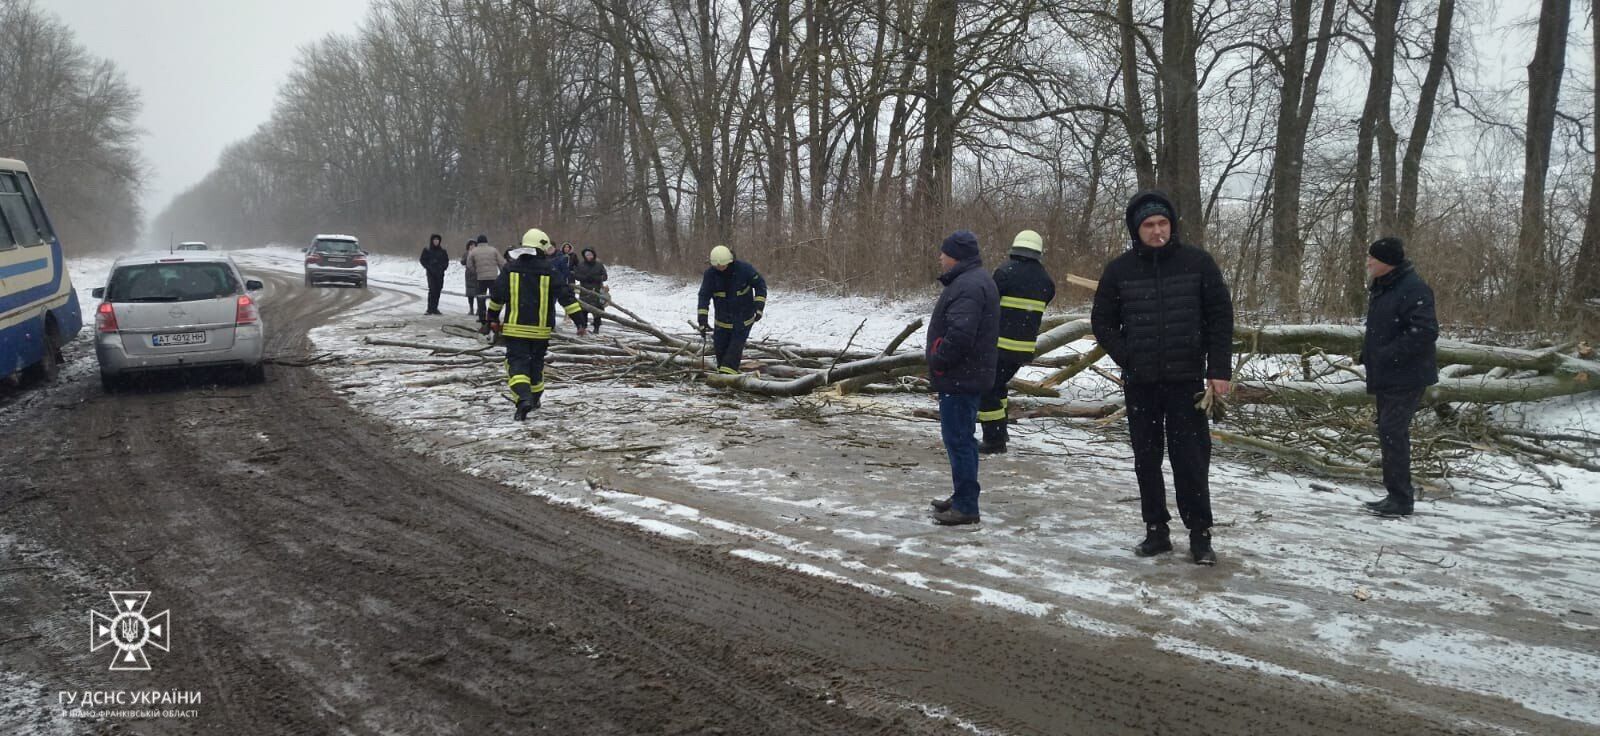 Частину України замело снігом: ситуація на дорогах ускладнена, далі буде гірше. Відео